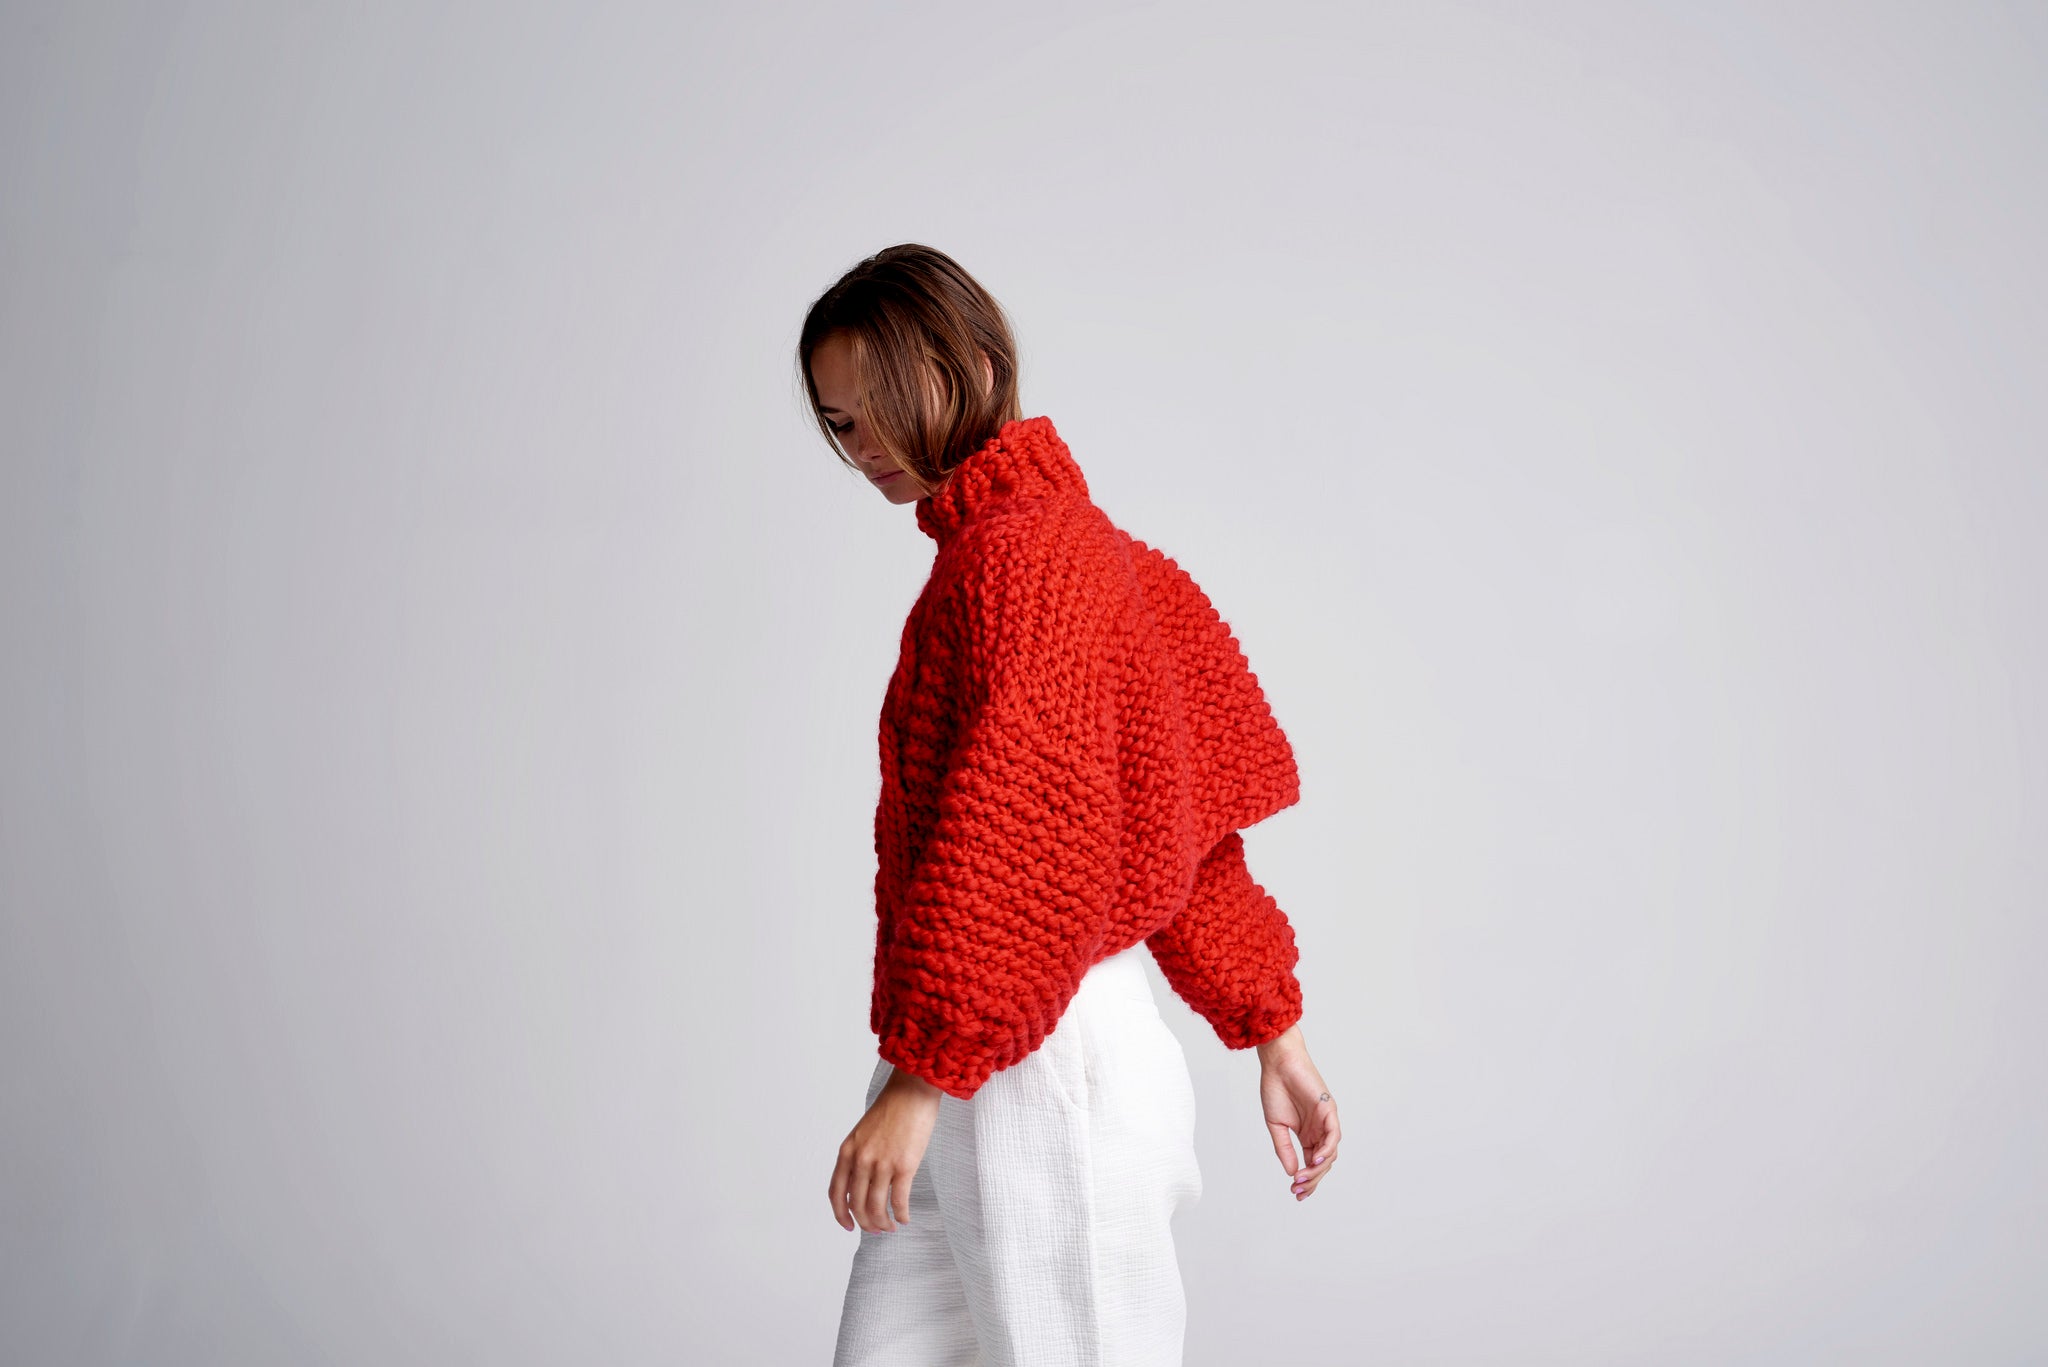 DIY Kit - Cropped Urban Fisherman Sweater - Merino No. 5